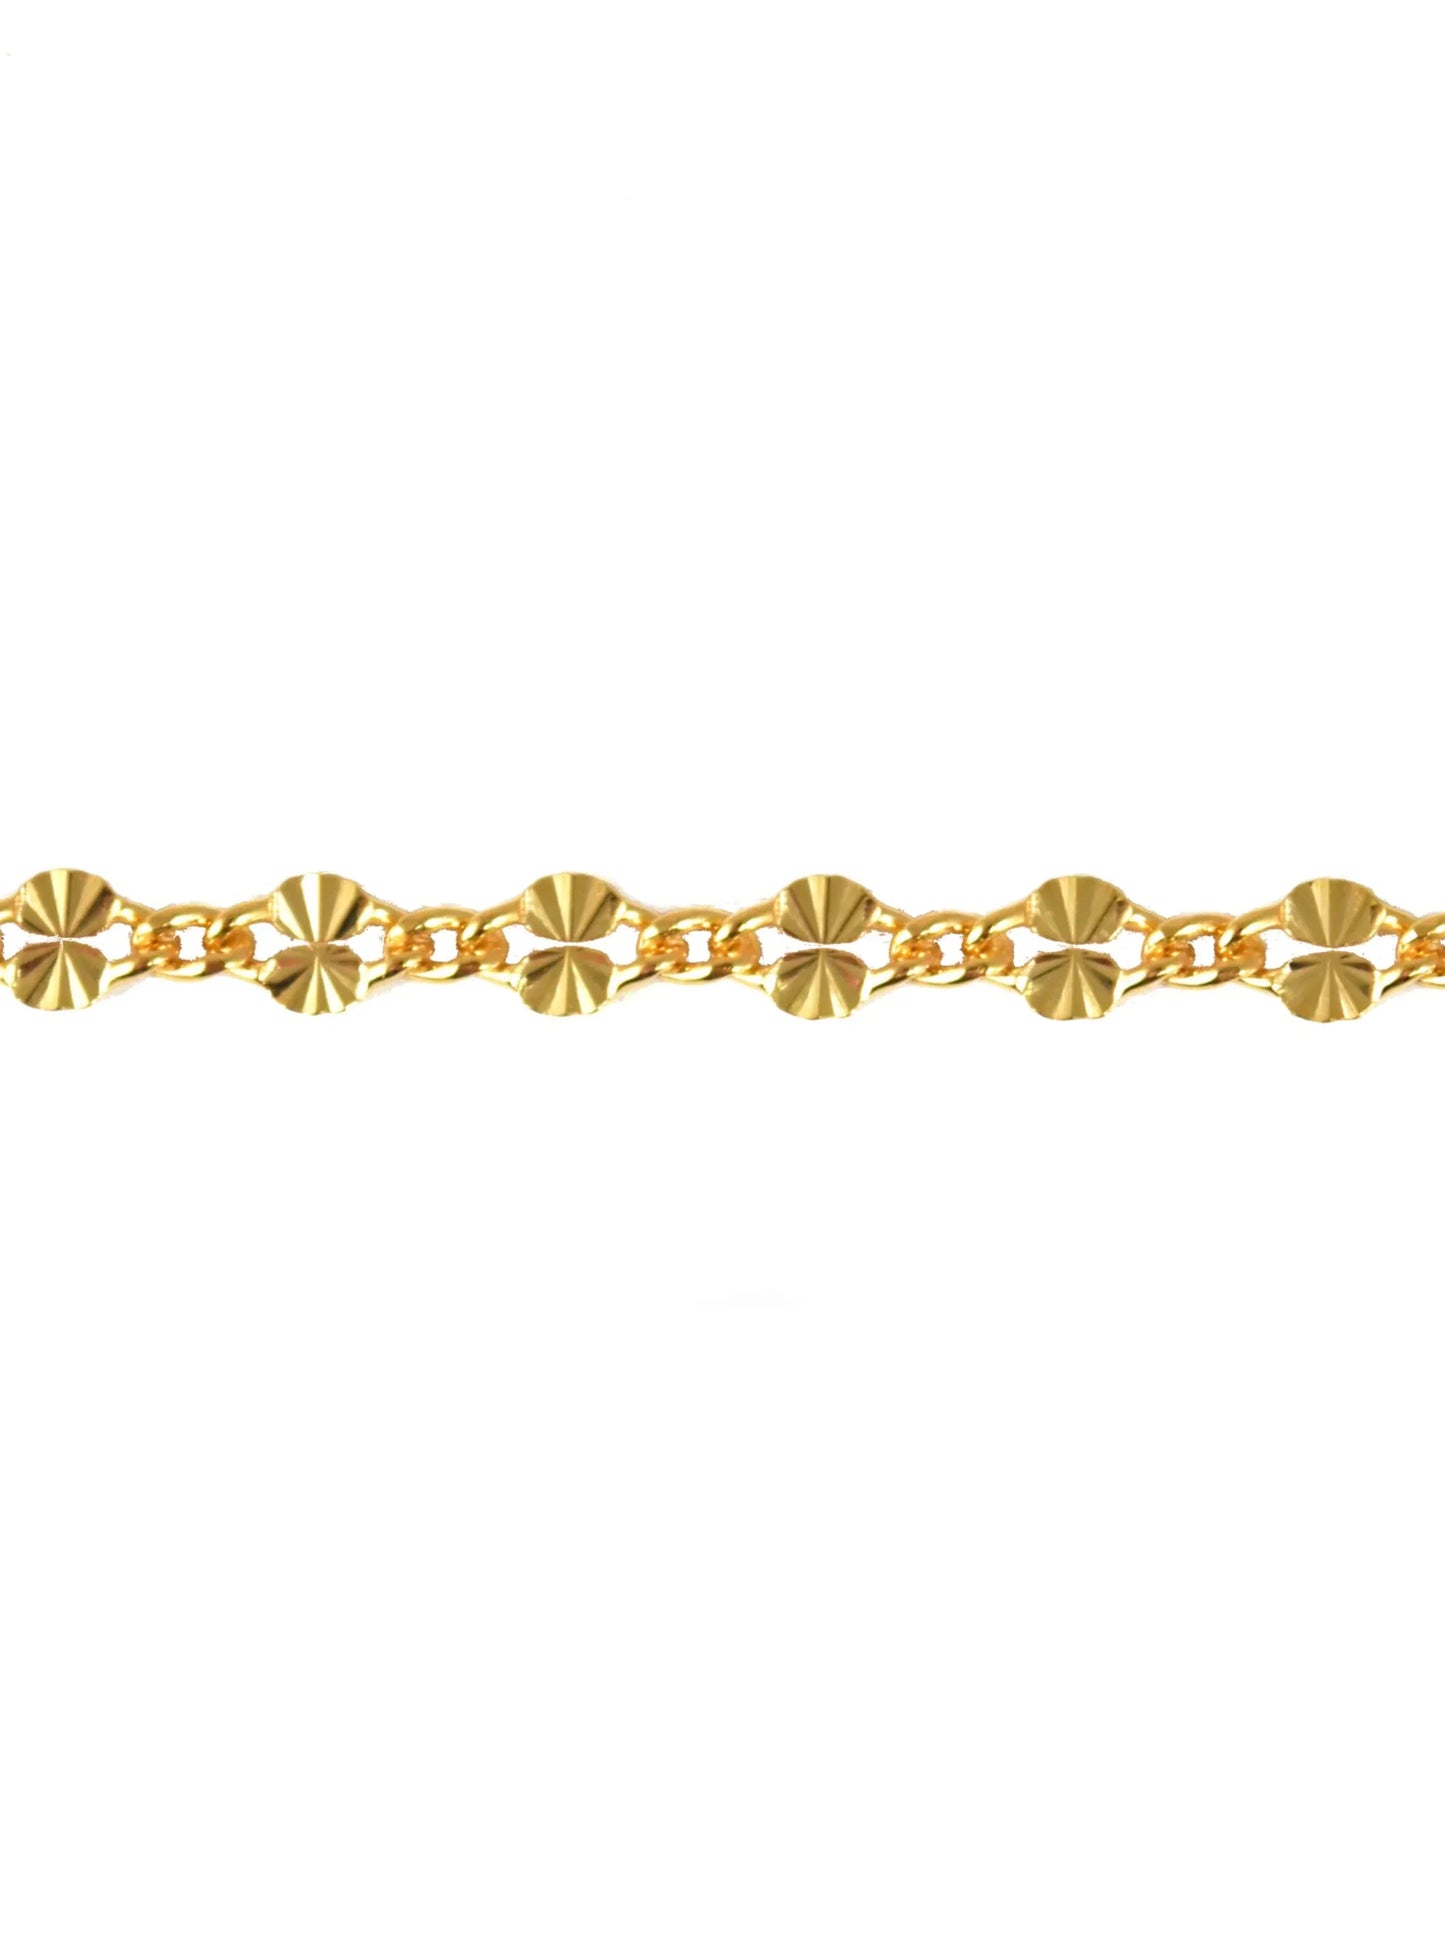 14K Solid Gold Starburst Chain 2.5mm